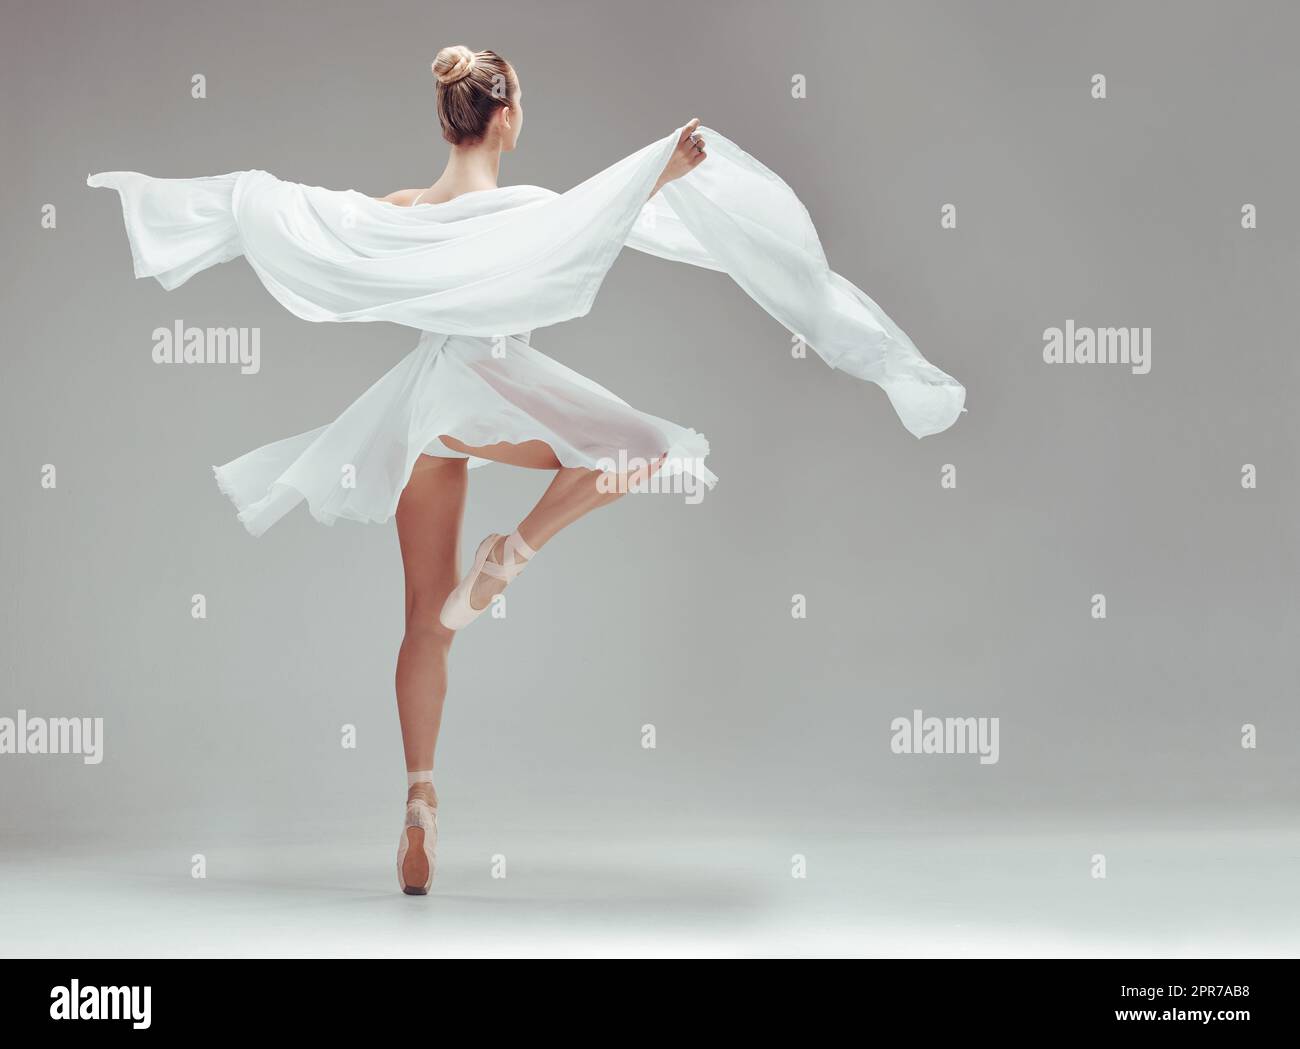 La danse est ma forme d'expression. Prise de vue en longueur d'une ballerine non reconnaissable dansant seule dans le studio. Banque D'Images